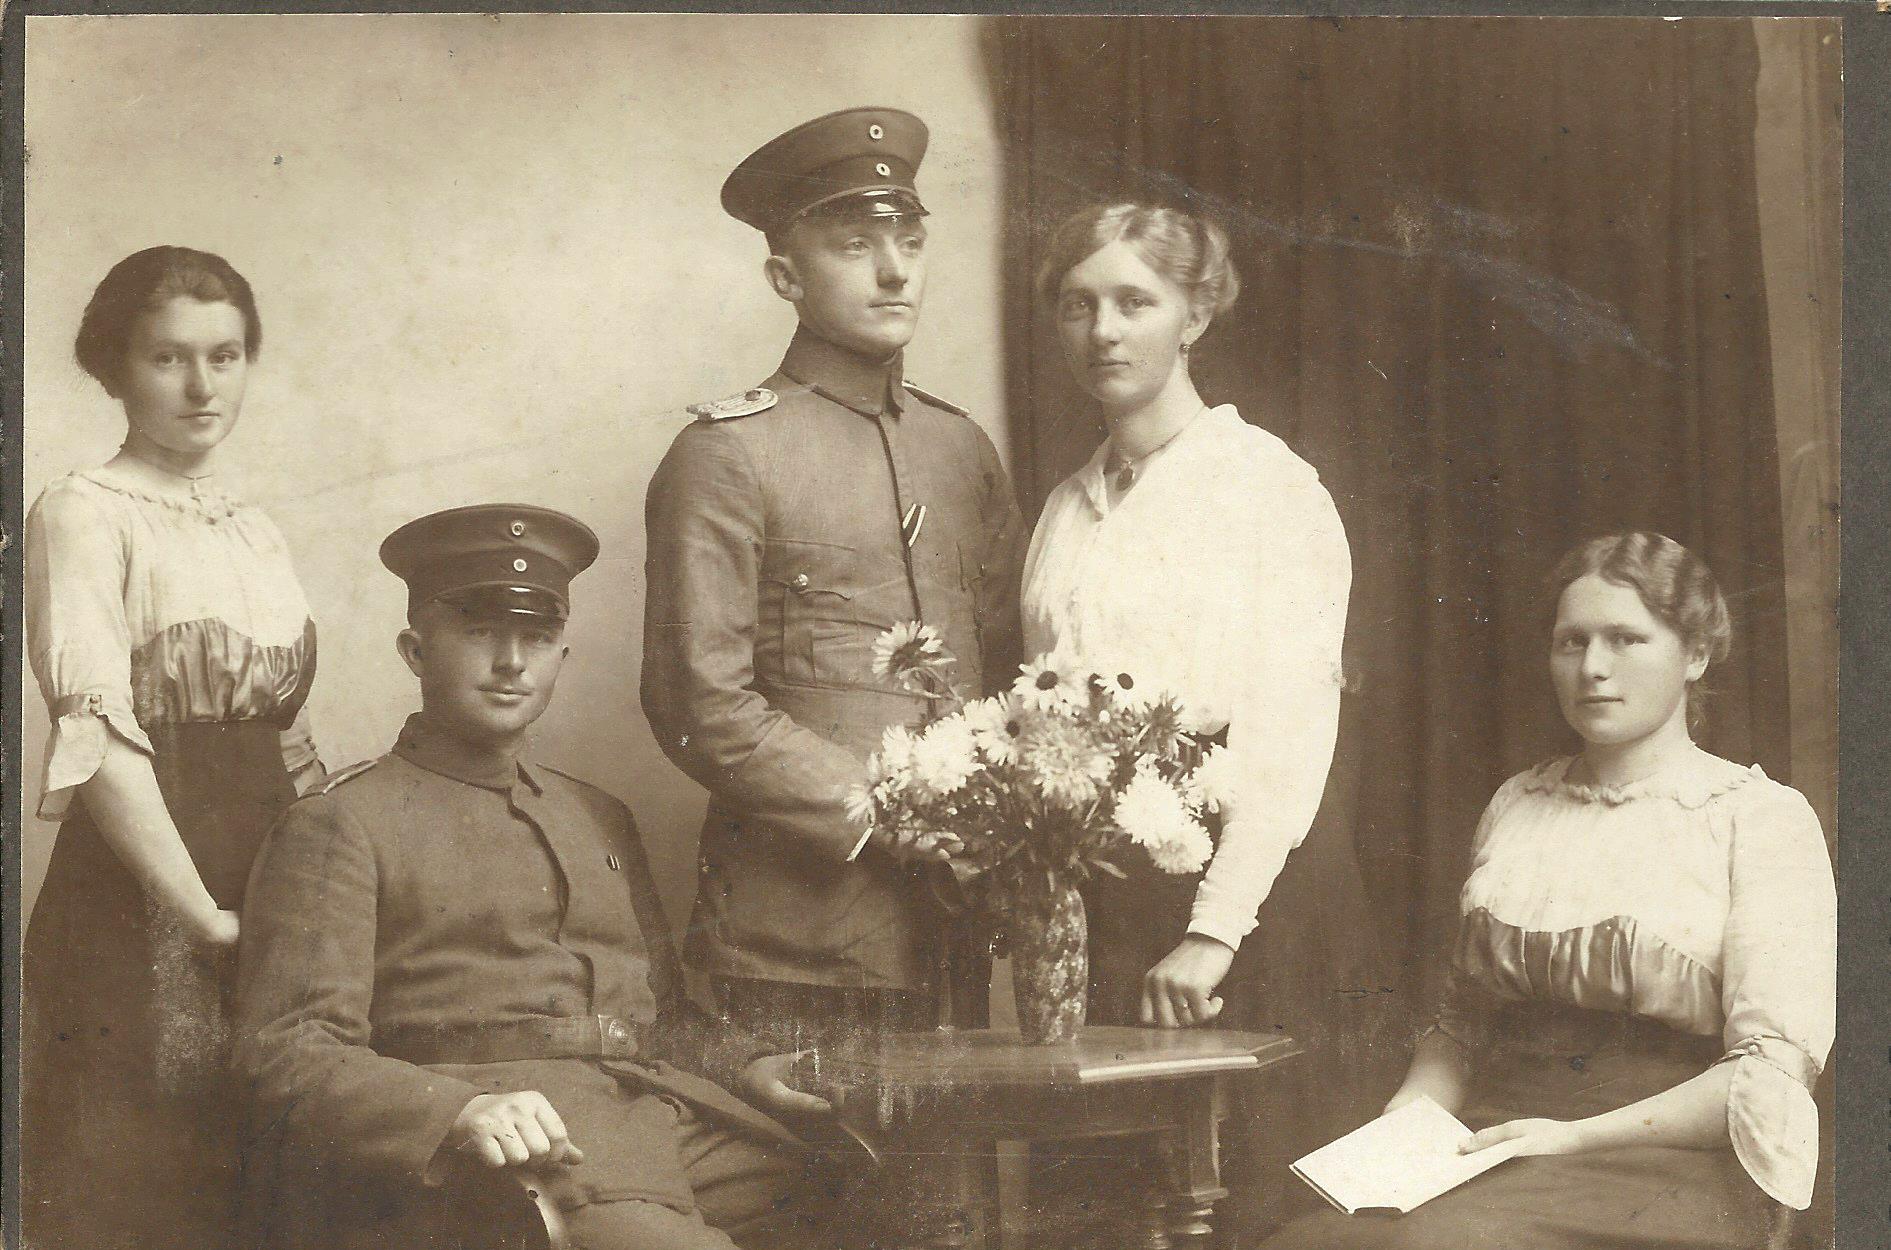 Hochzeitsfoto von Ankes Großeltern